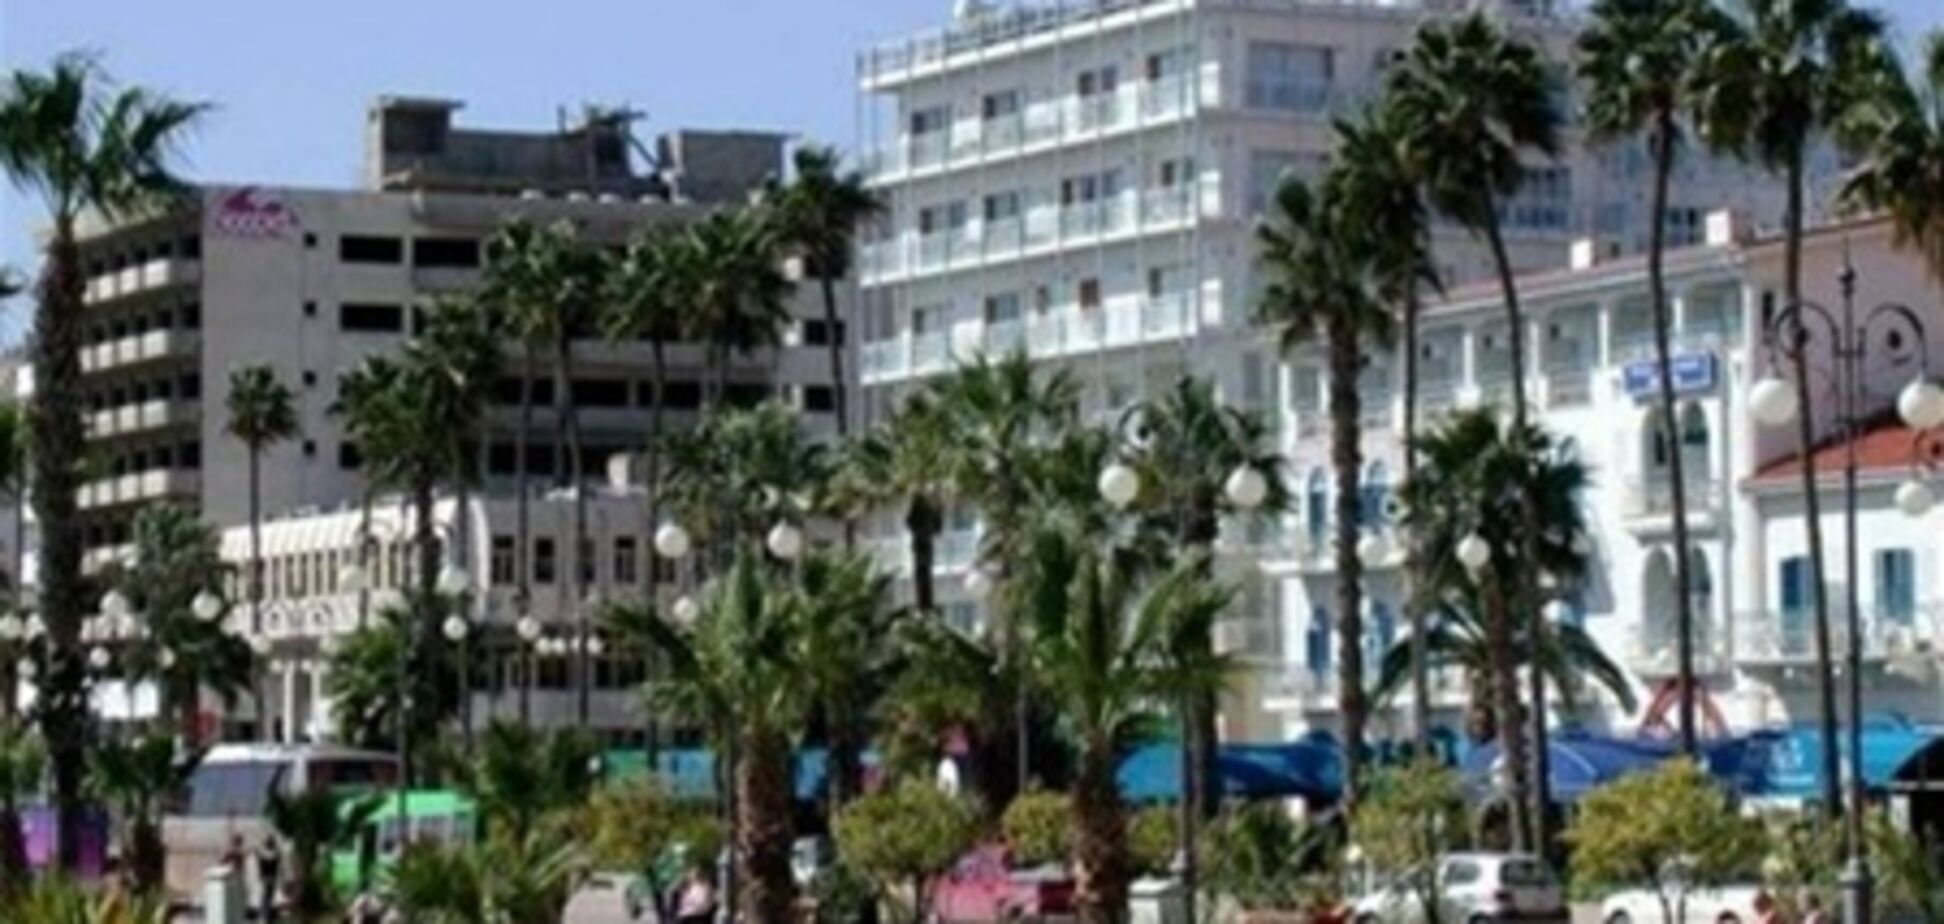 Будущее рынка недвижимости Кипра непредсказуемо